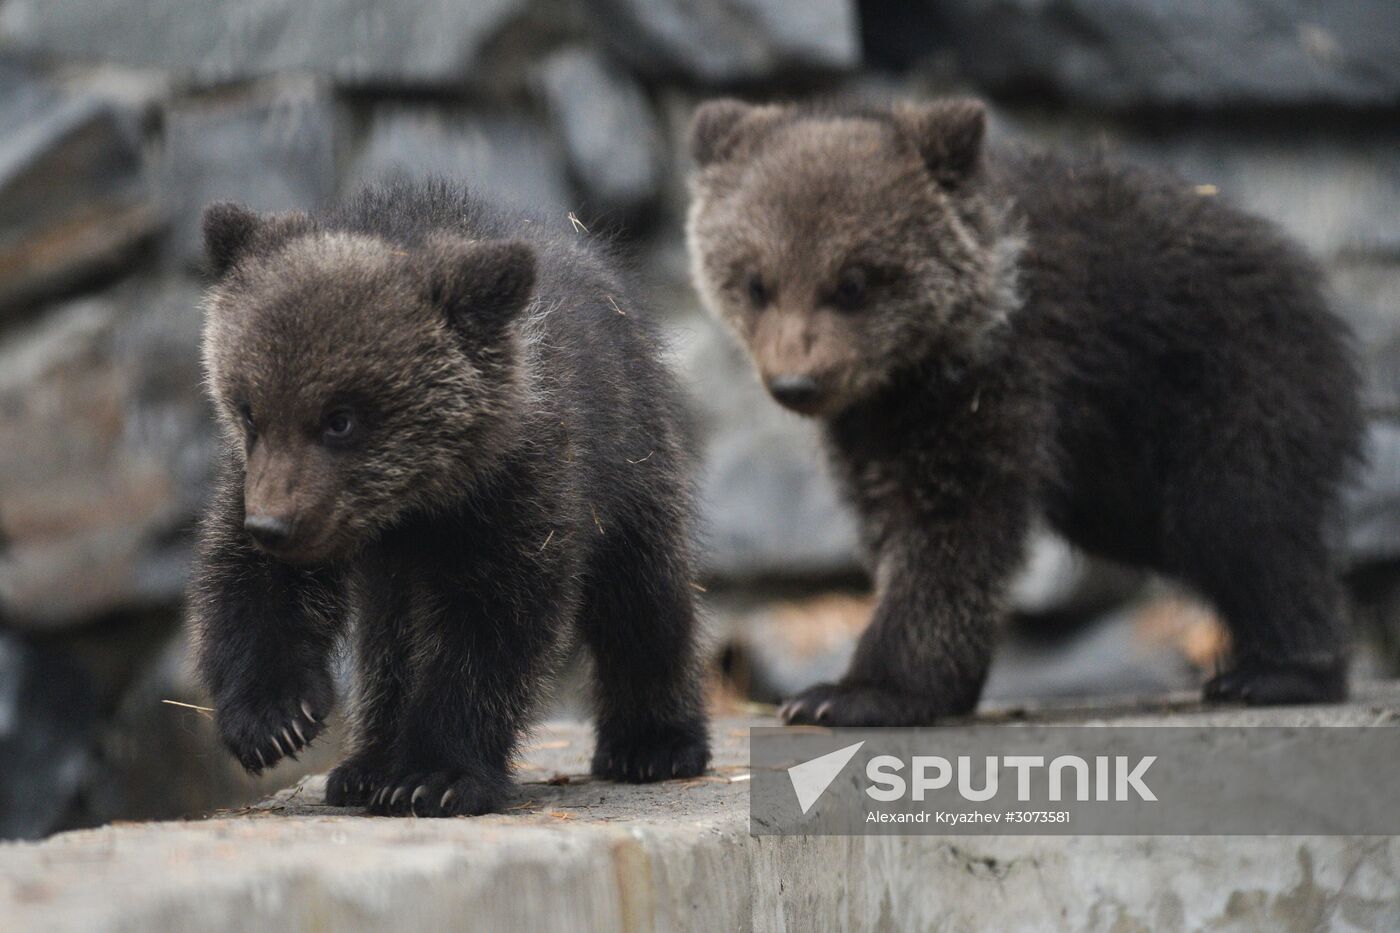 New arrivals at Novosibirsk Zoo